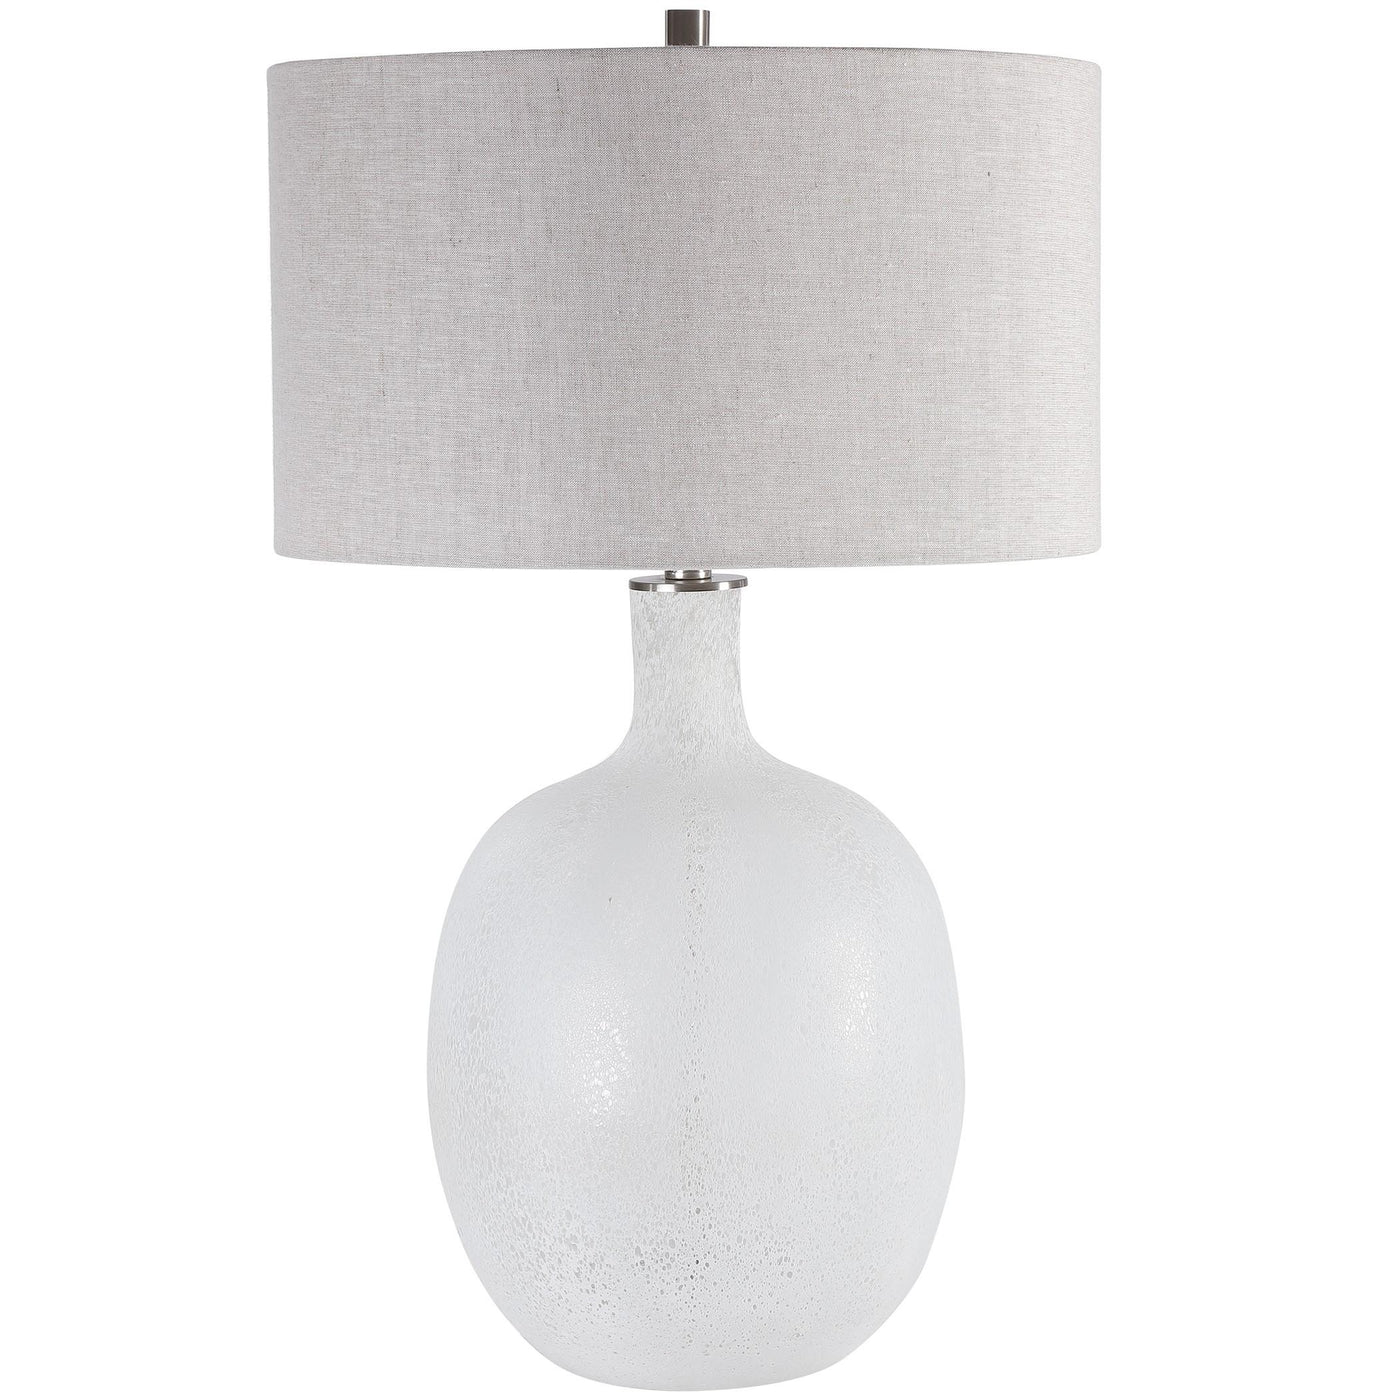 Uttermost Lighting Uttermost Whiteout Mottled Glass Table Lamp House of Isabella UK